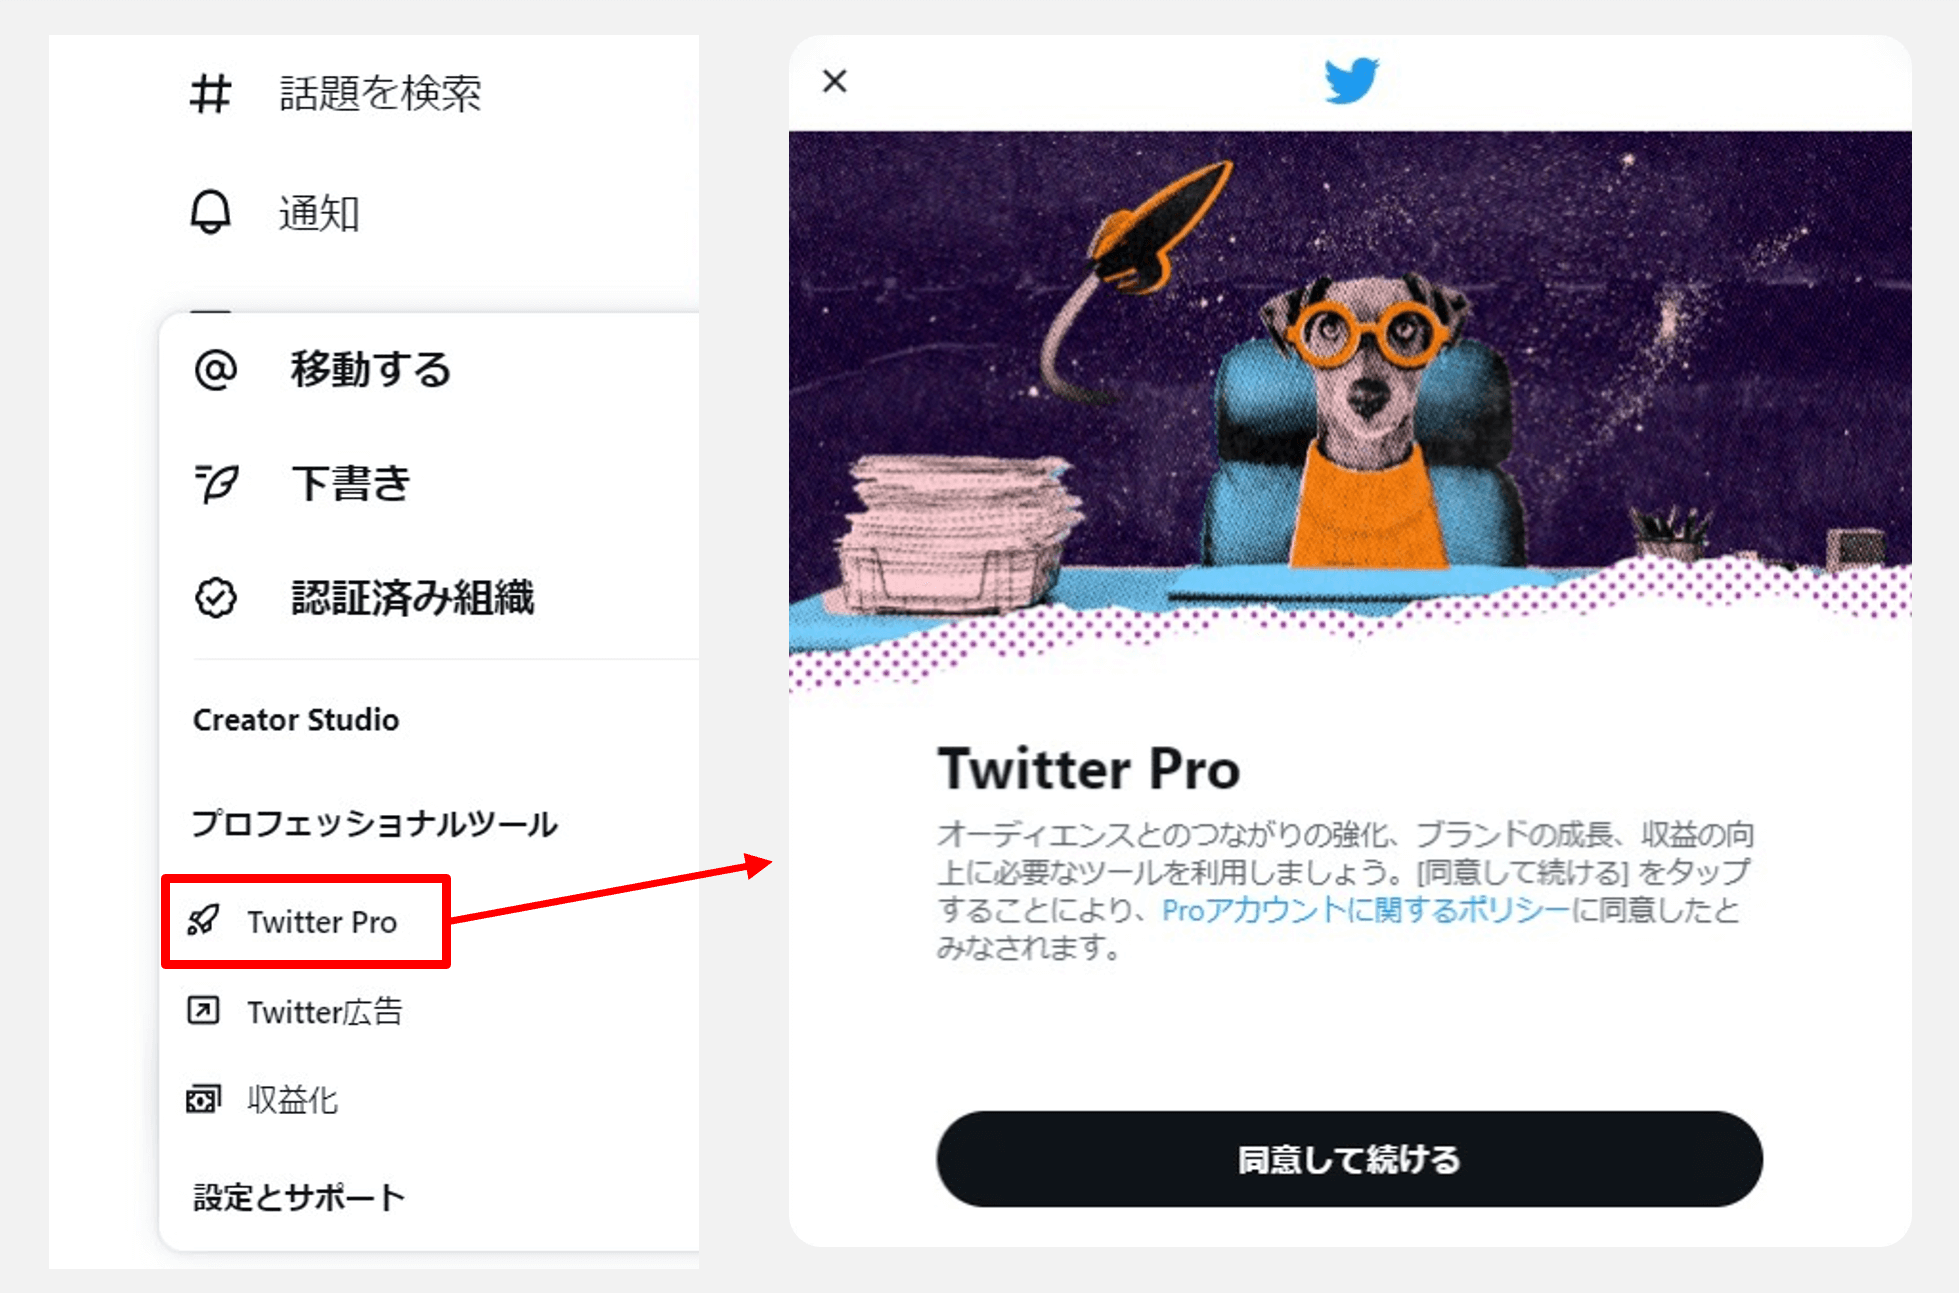 Twitterダイナミック商品広告_TwitterPro_t